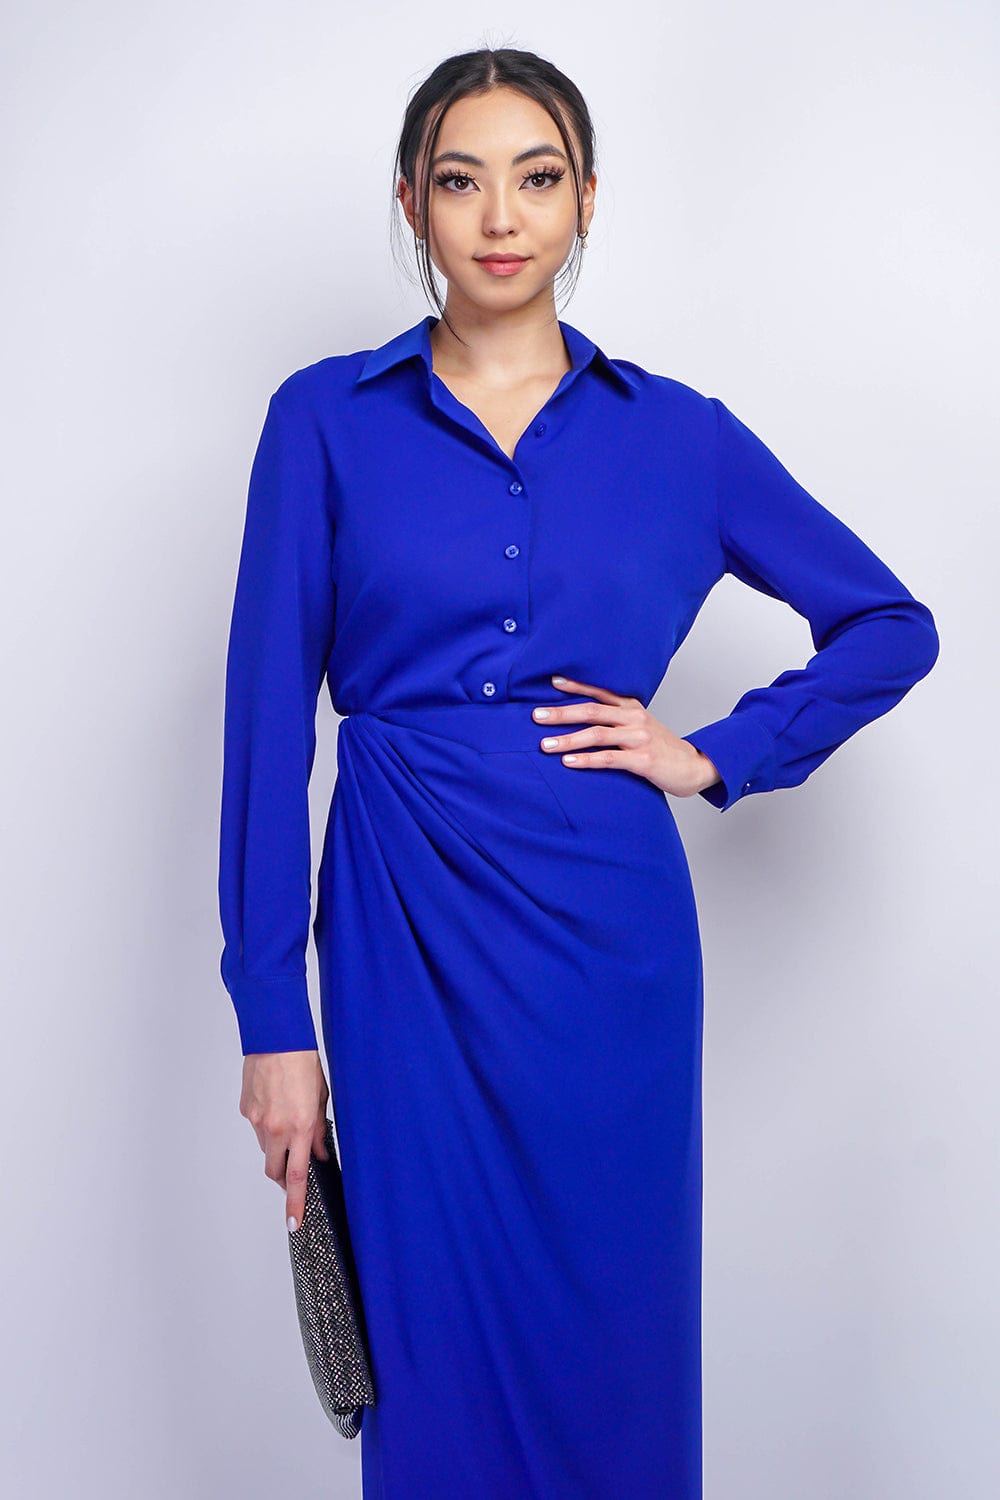 TOPS Cobalt Blue Button Up Jennifer Dress Shirt - Chloe Dao